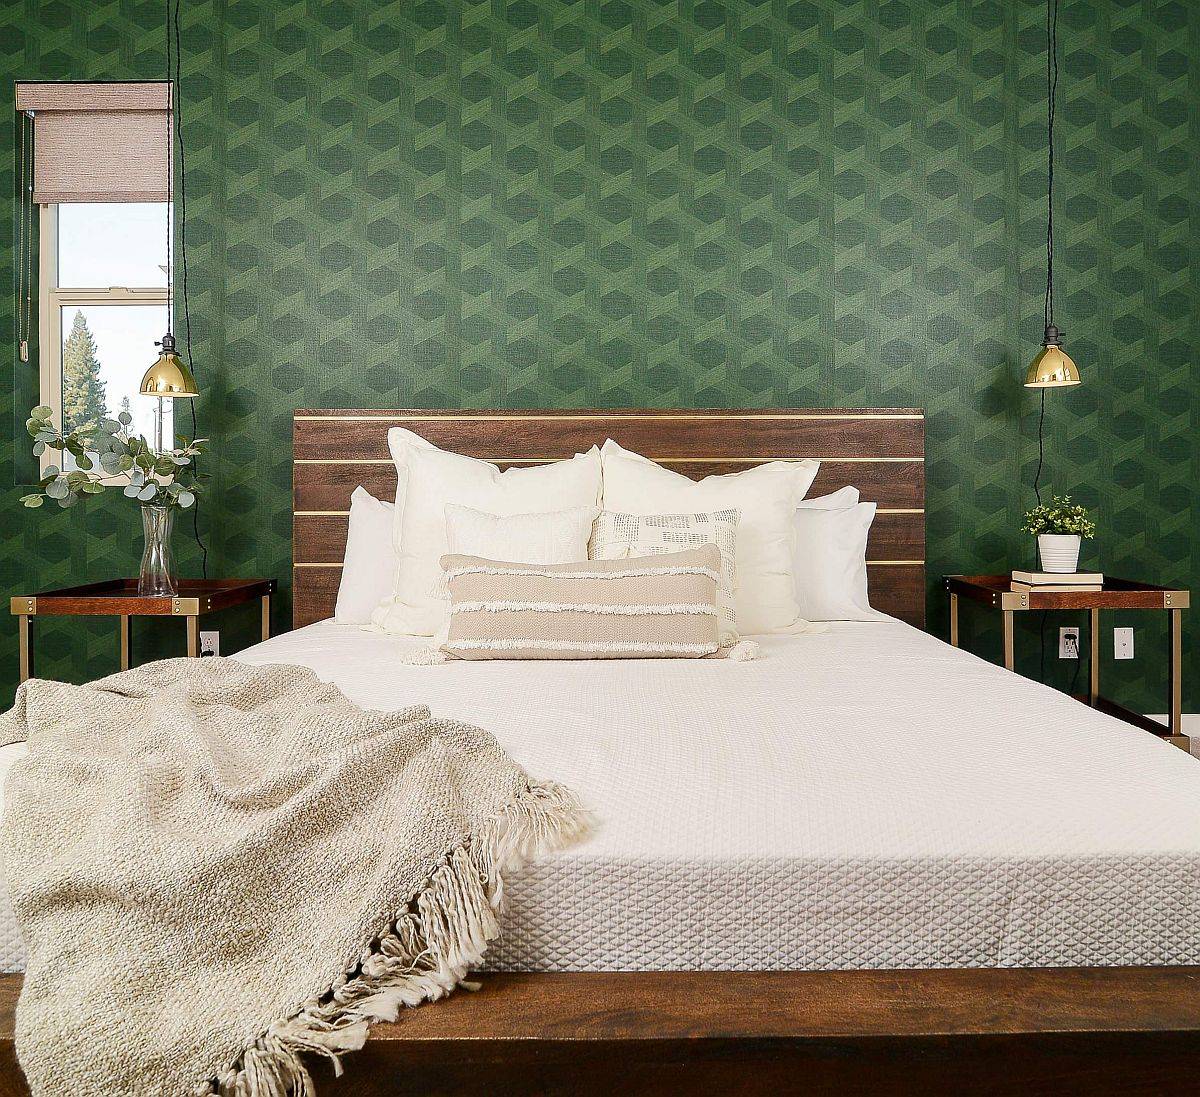 Thêm sắc xanh thiên nhiên vào phòng ngủ thông qua giấy dán tường là ý tưởng đơn giản, dễ thực hiện, đáng để bạn tham khảo.